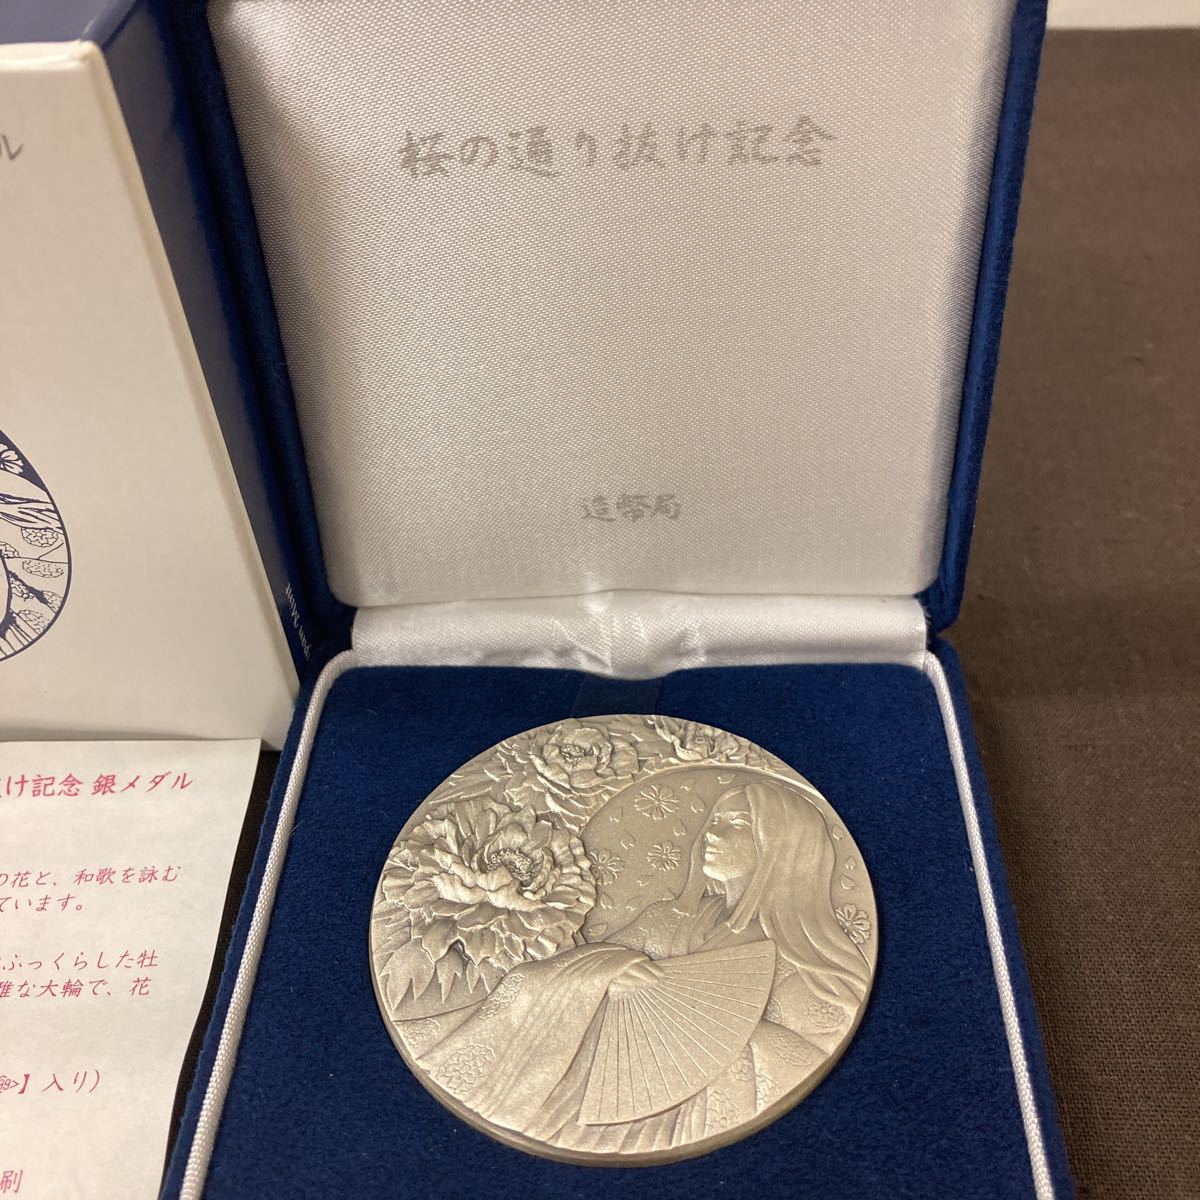 平成２８年桜の通り抜け記念銀メダル牡丹 平成27年桜の通り抜け記念 